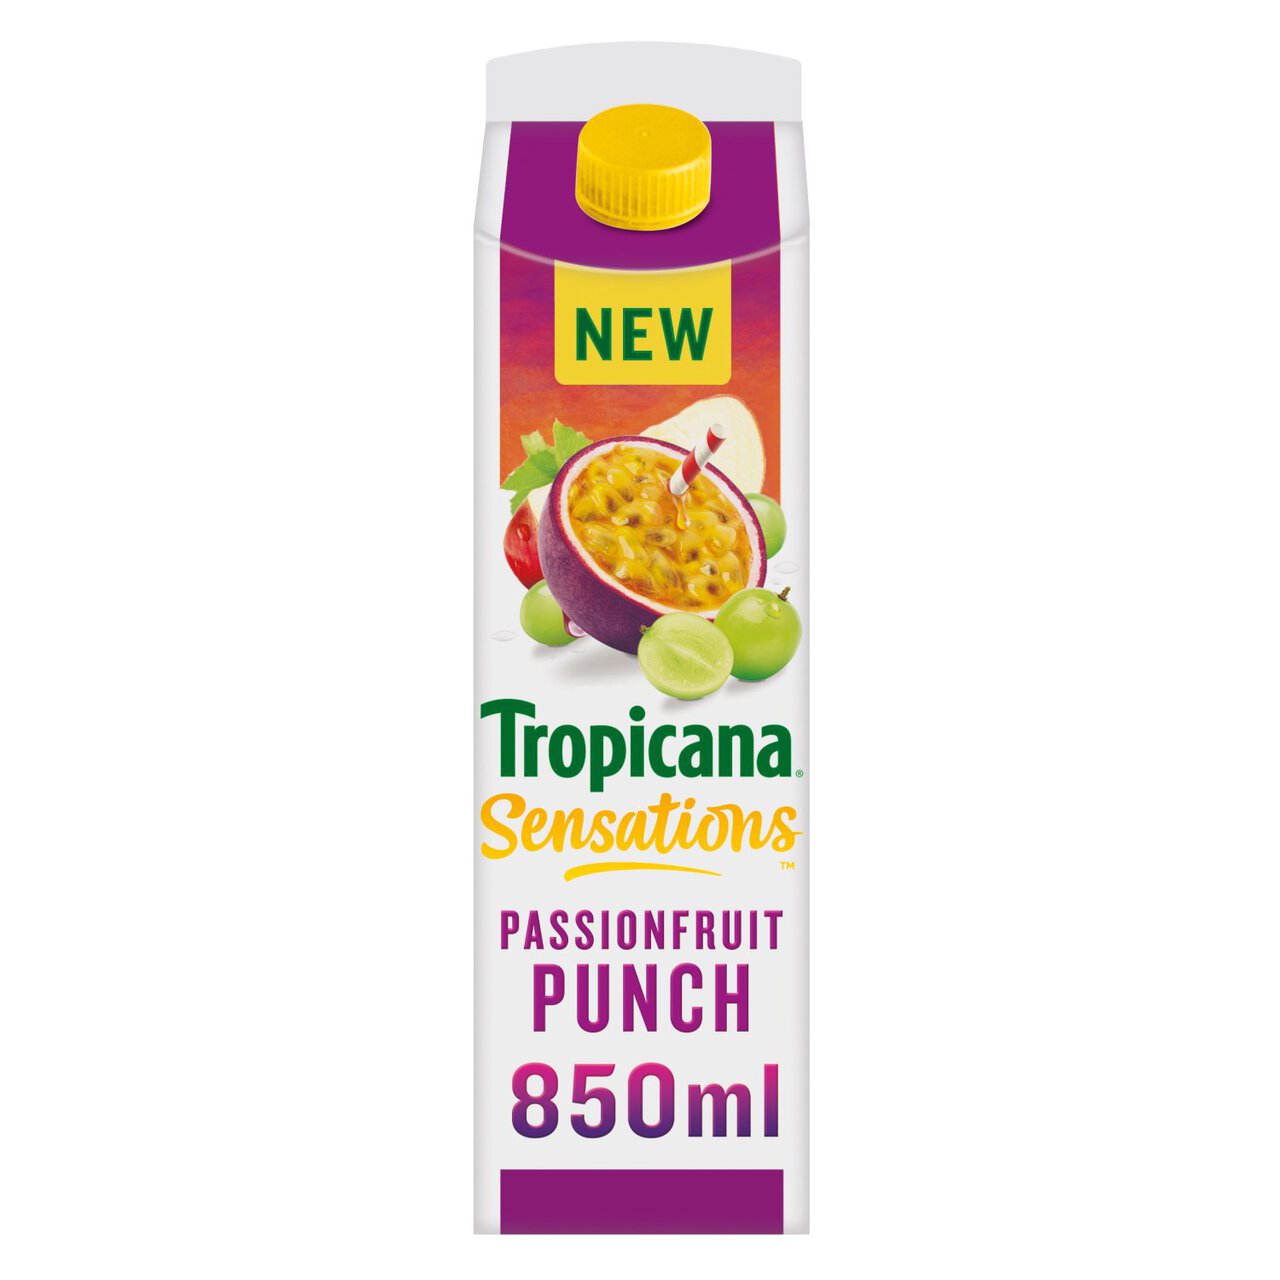 Tropicana Sensations Passionfruit Punch 850ml